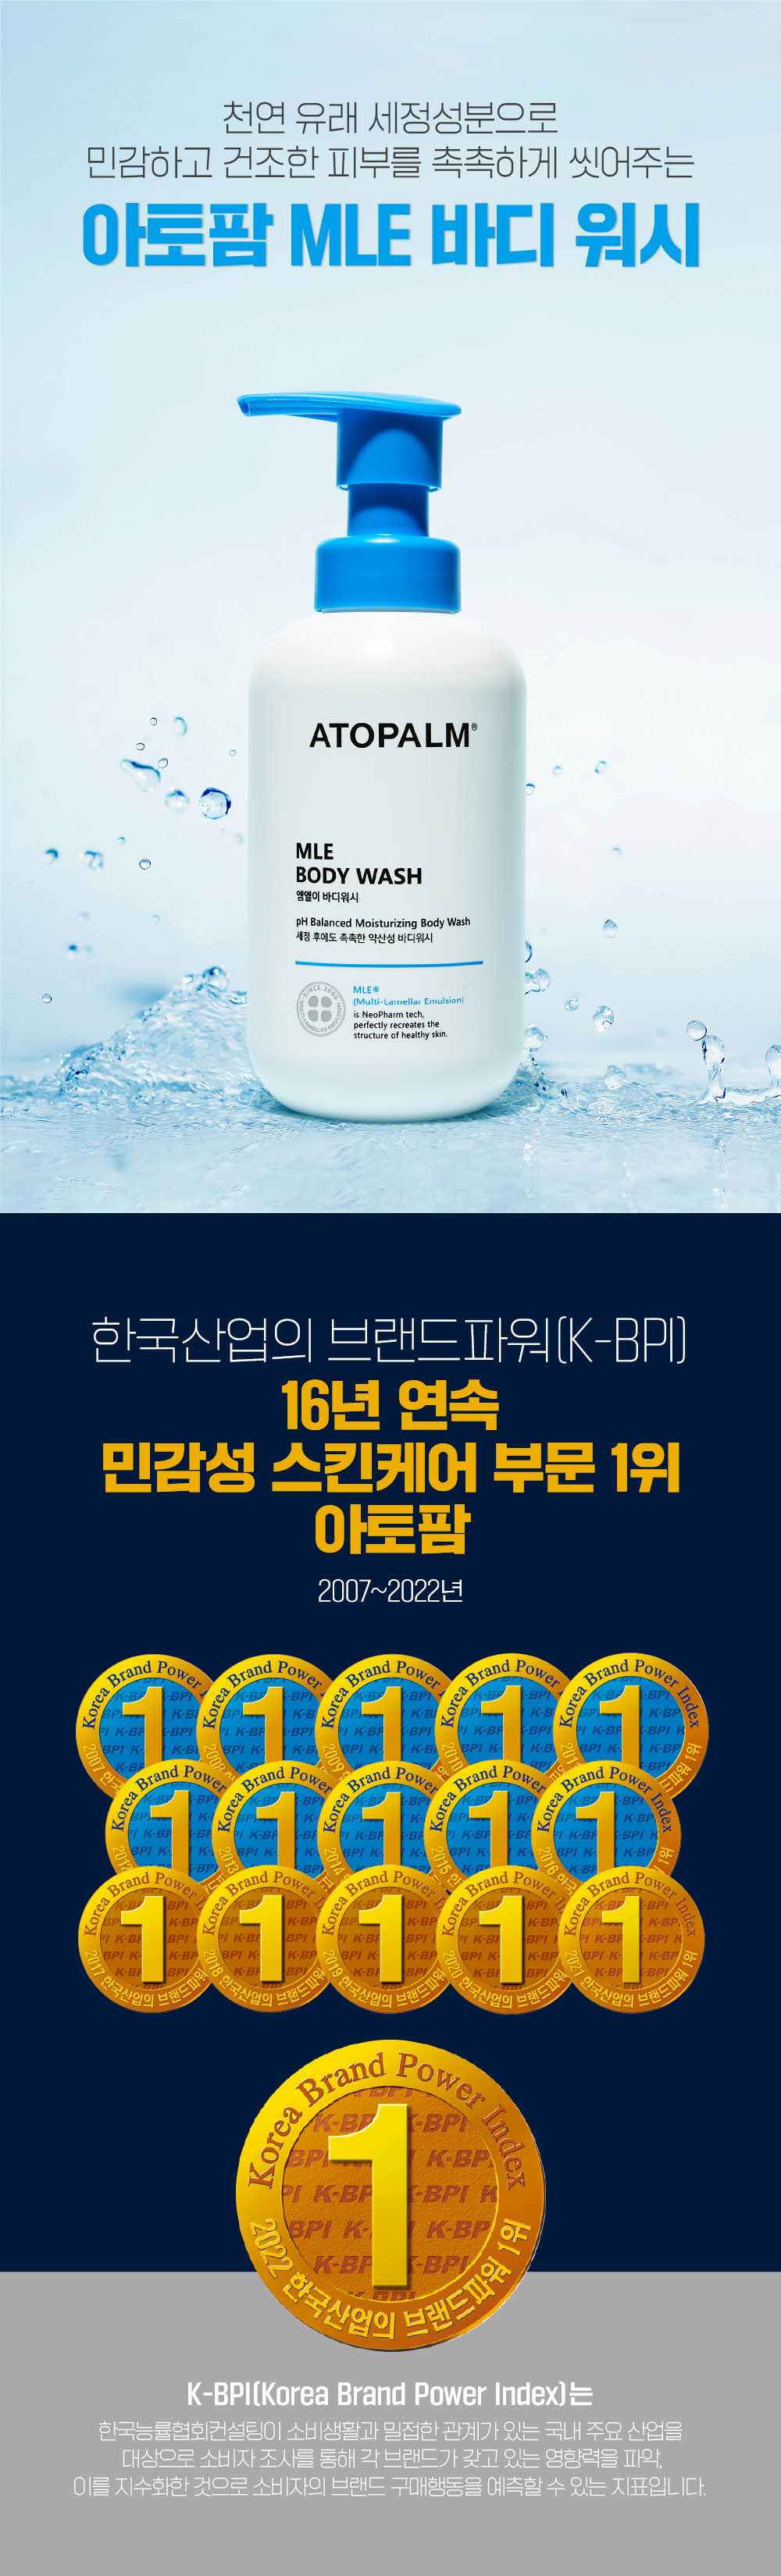 천연 유래 세정성분으로 민감하고 건조한 피부를 촉촉하게 씻어주는 아토팜 MLE 바디 워시
	한국산업의 브랜드파워(K-BPI) 16년 연속 민감성 스킨케어 부분 1위 아토팜 2007~2022년